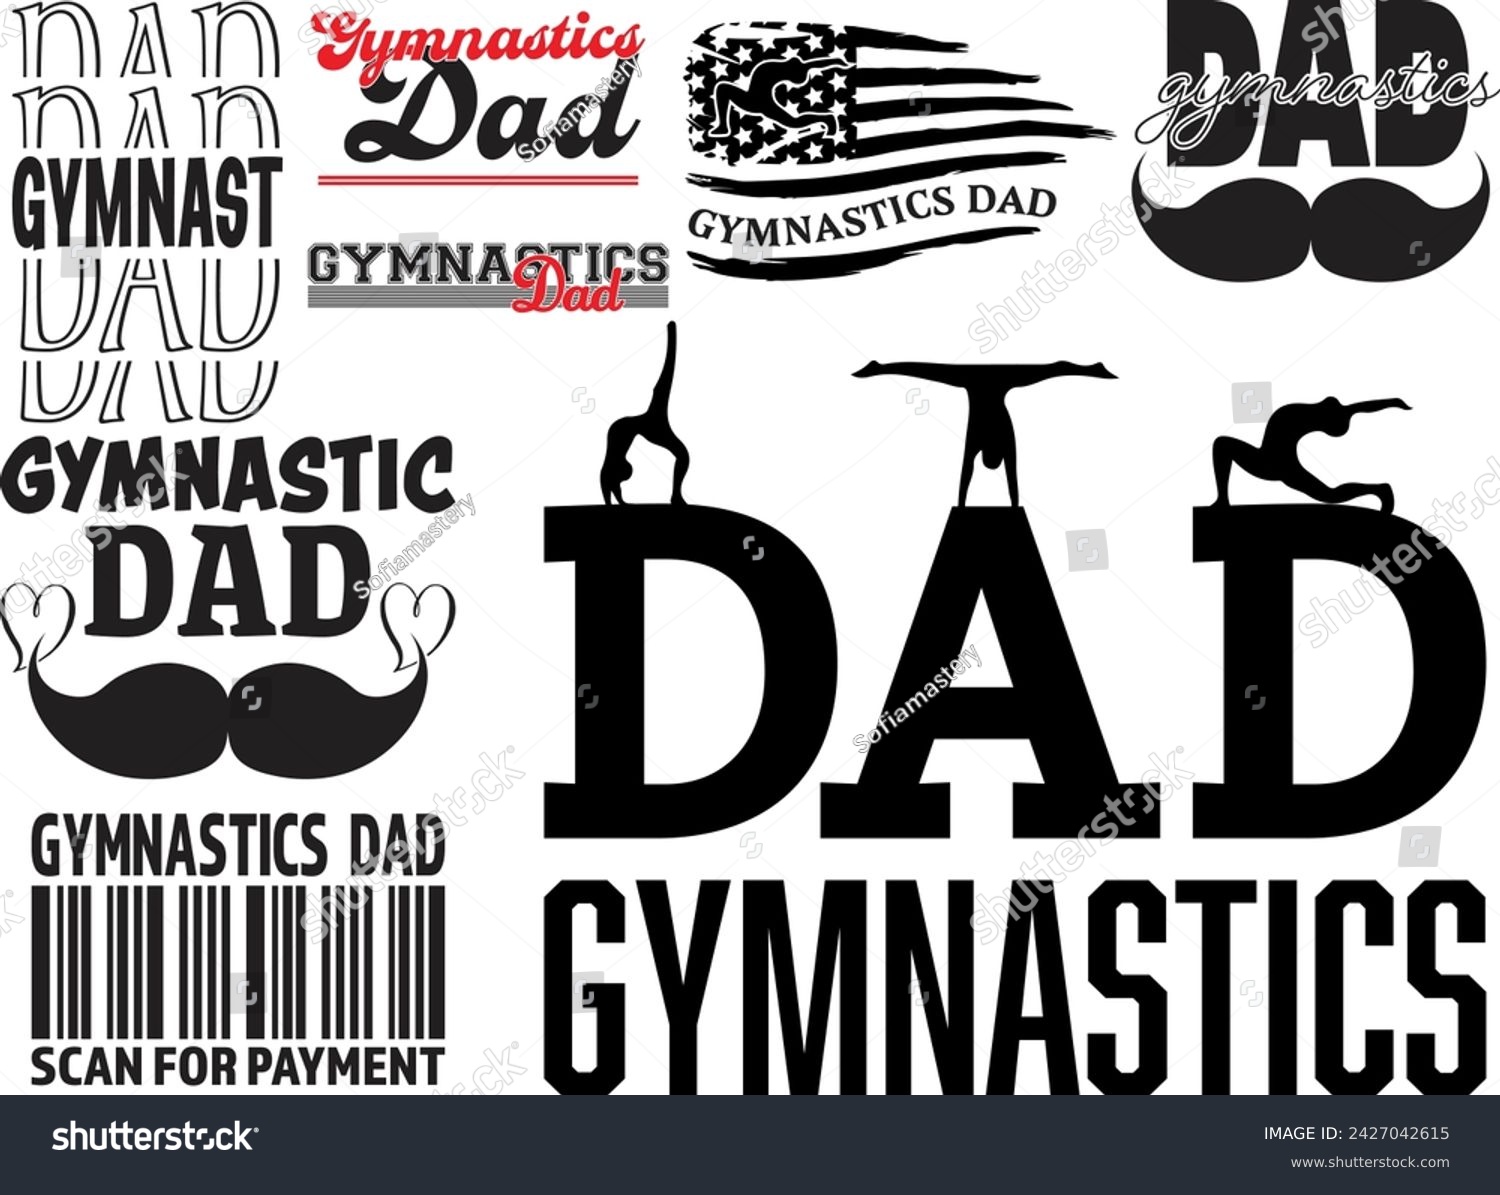 SVG of Gymnastics Dad bundle, Gymnastics Dad, Gymnastics Dad flag, Gymnastics, Sports, Gymnast dad life bundle svg